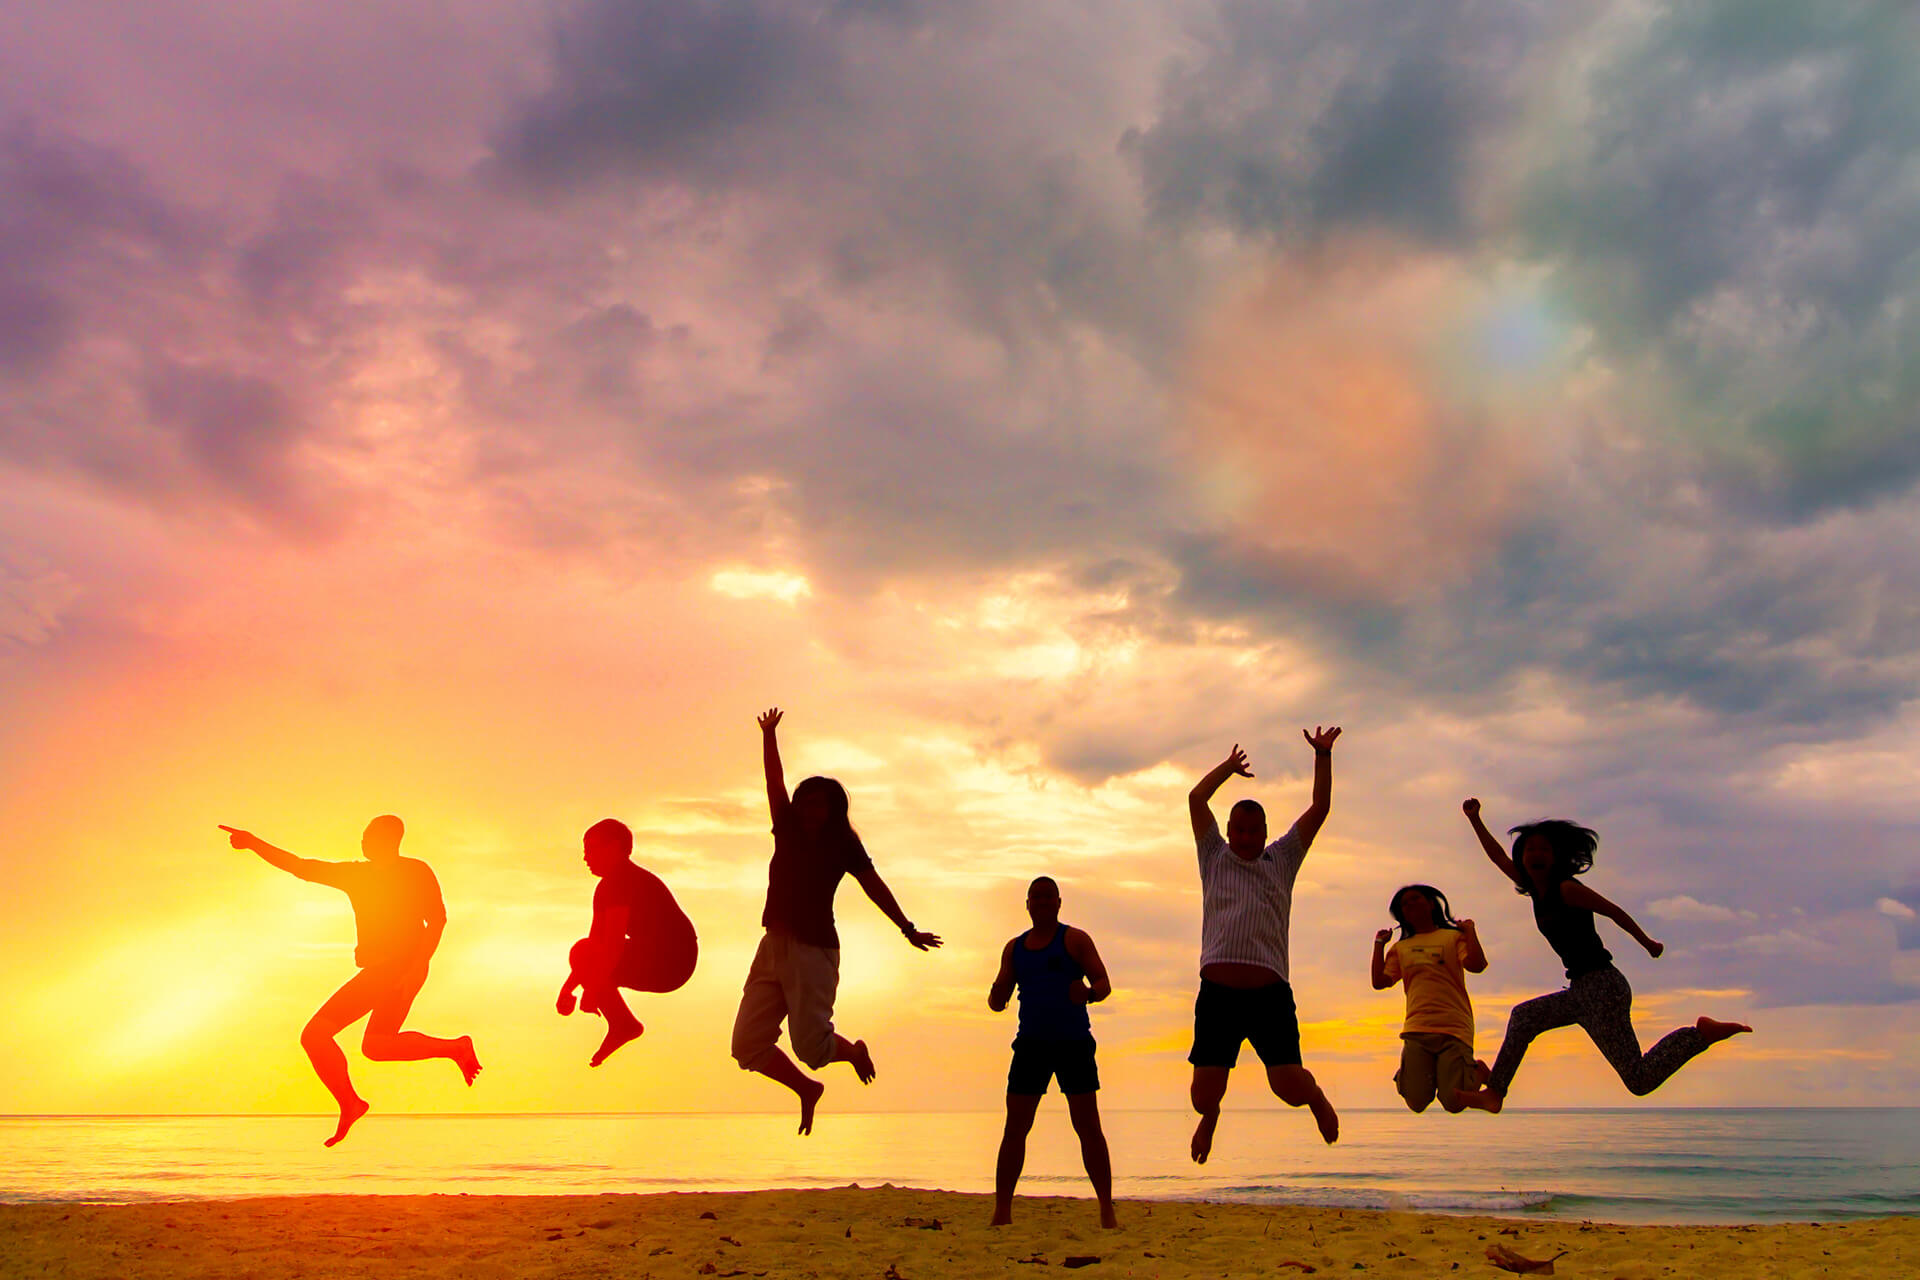 Sieben junge Menschen springen in jubelnder Pose an einem Strand wÃ¤hrend eines Sonnenuntergangs.